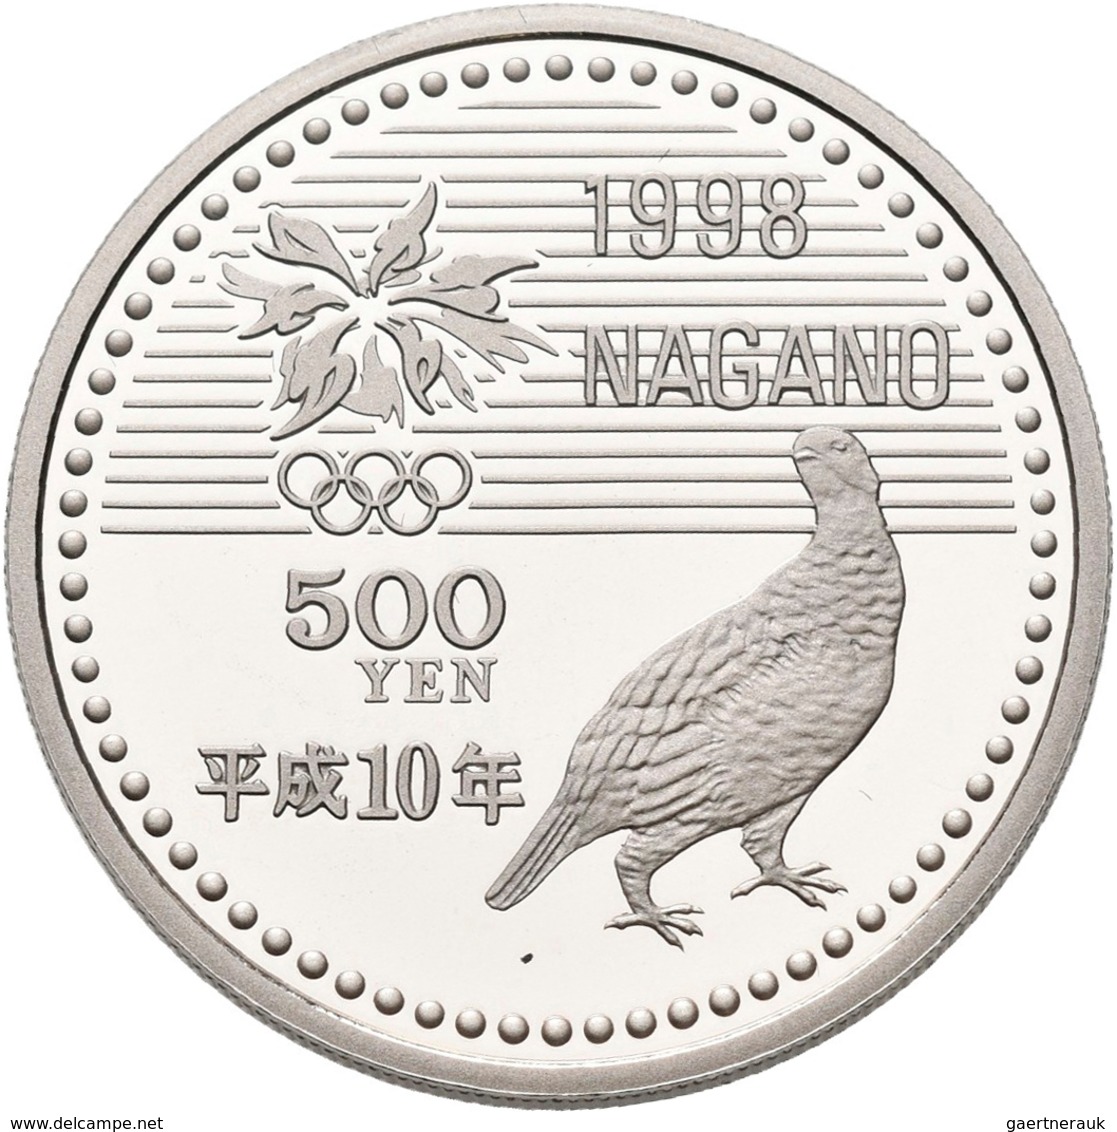 Japan: Olympische Winterspiele Nagano 1998: Set 3 x 500 Yen CN Münzen plus 3 x 5.000 Yen Silber Münz